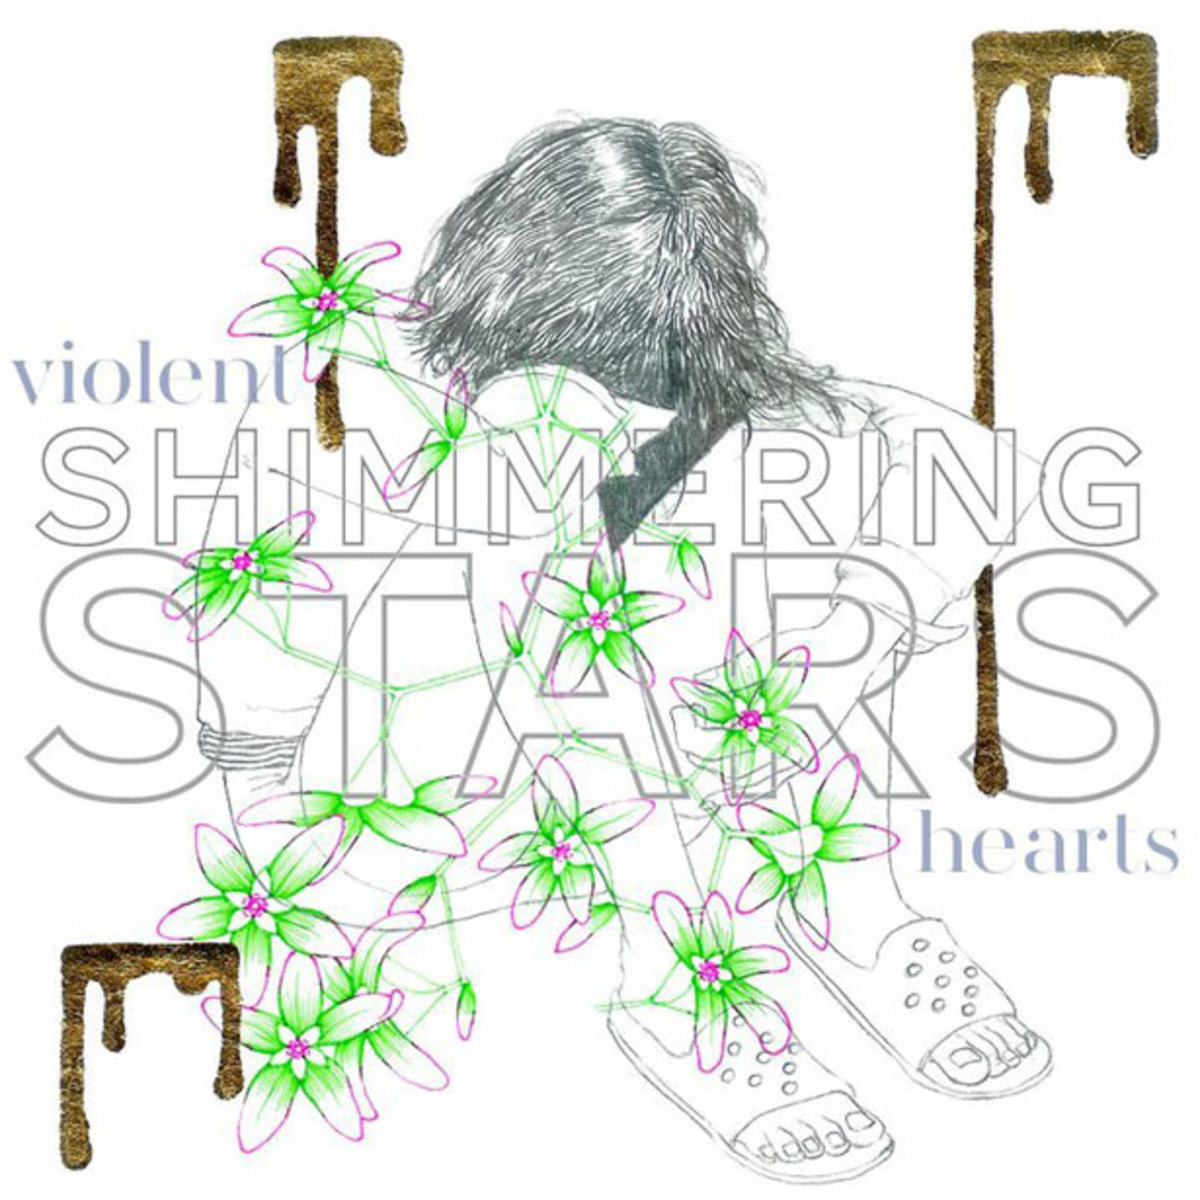 shimmering-stars-violent-hearts